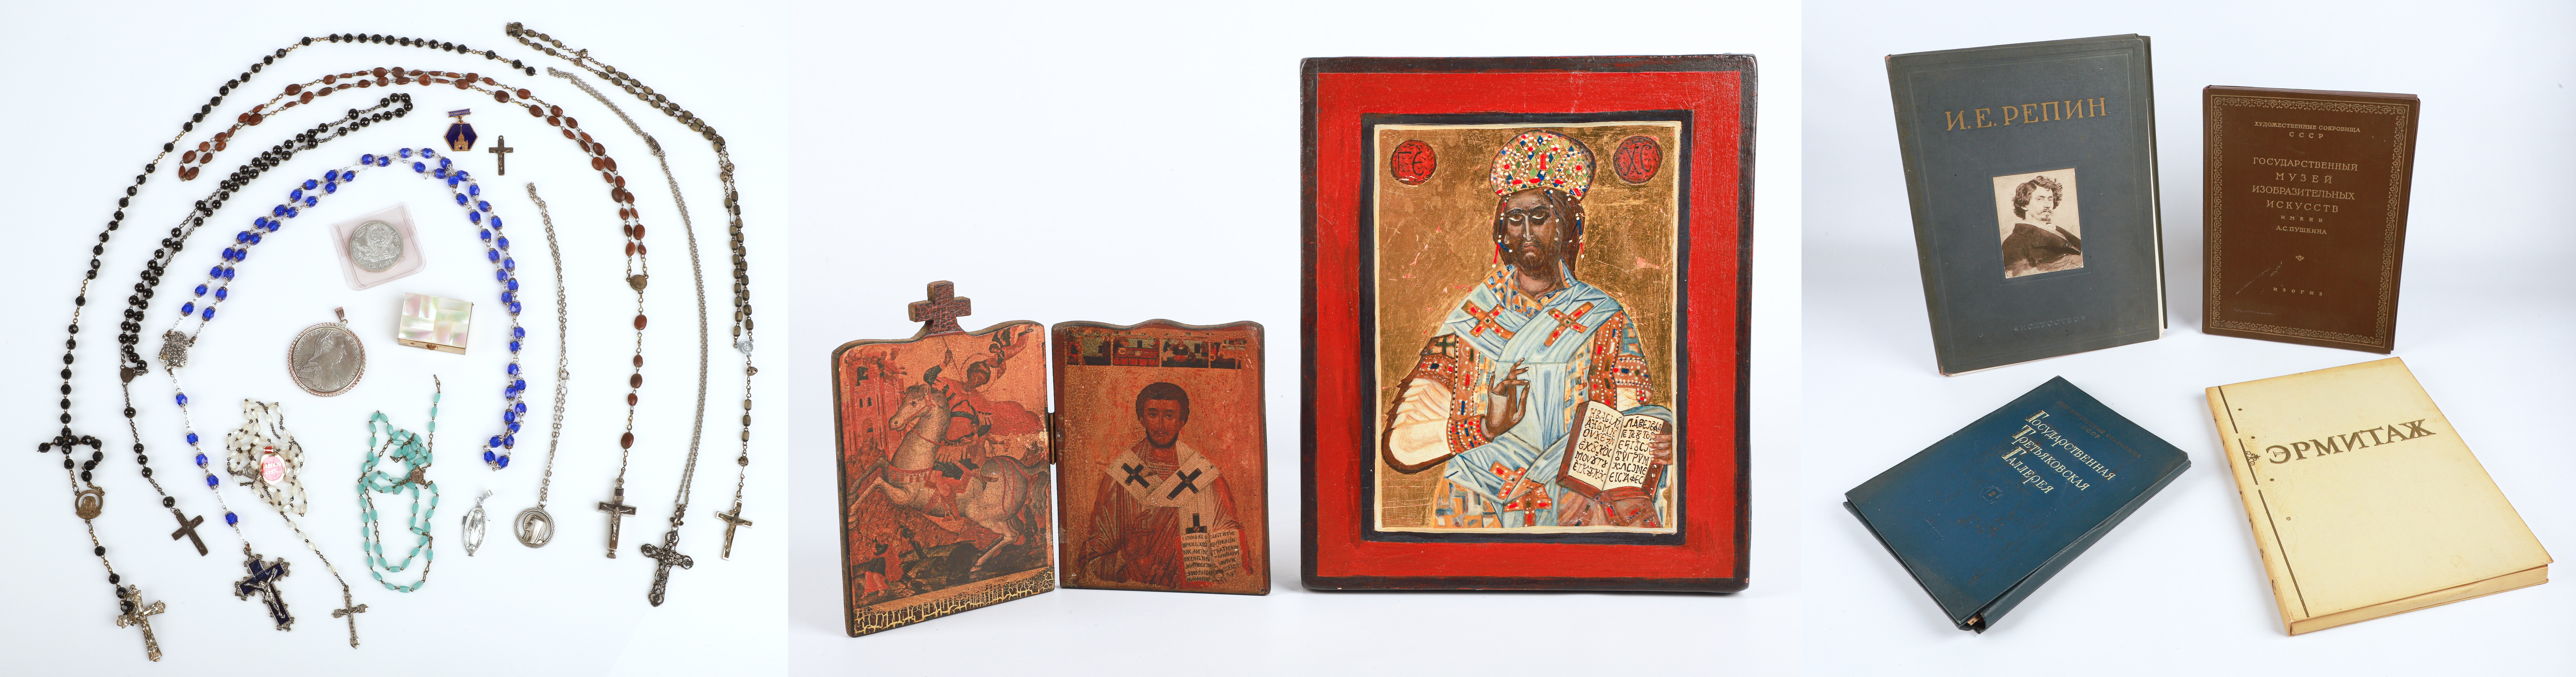 Russian Art Books Rosaries Religious 3c684c